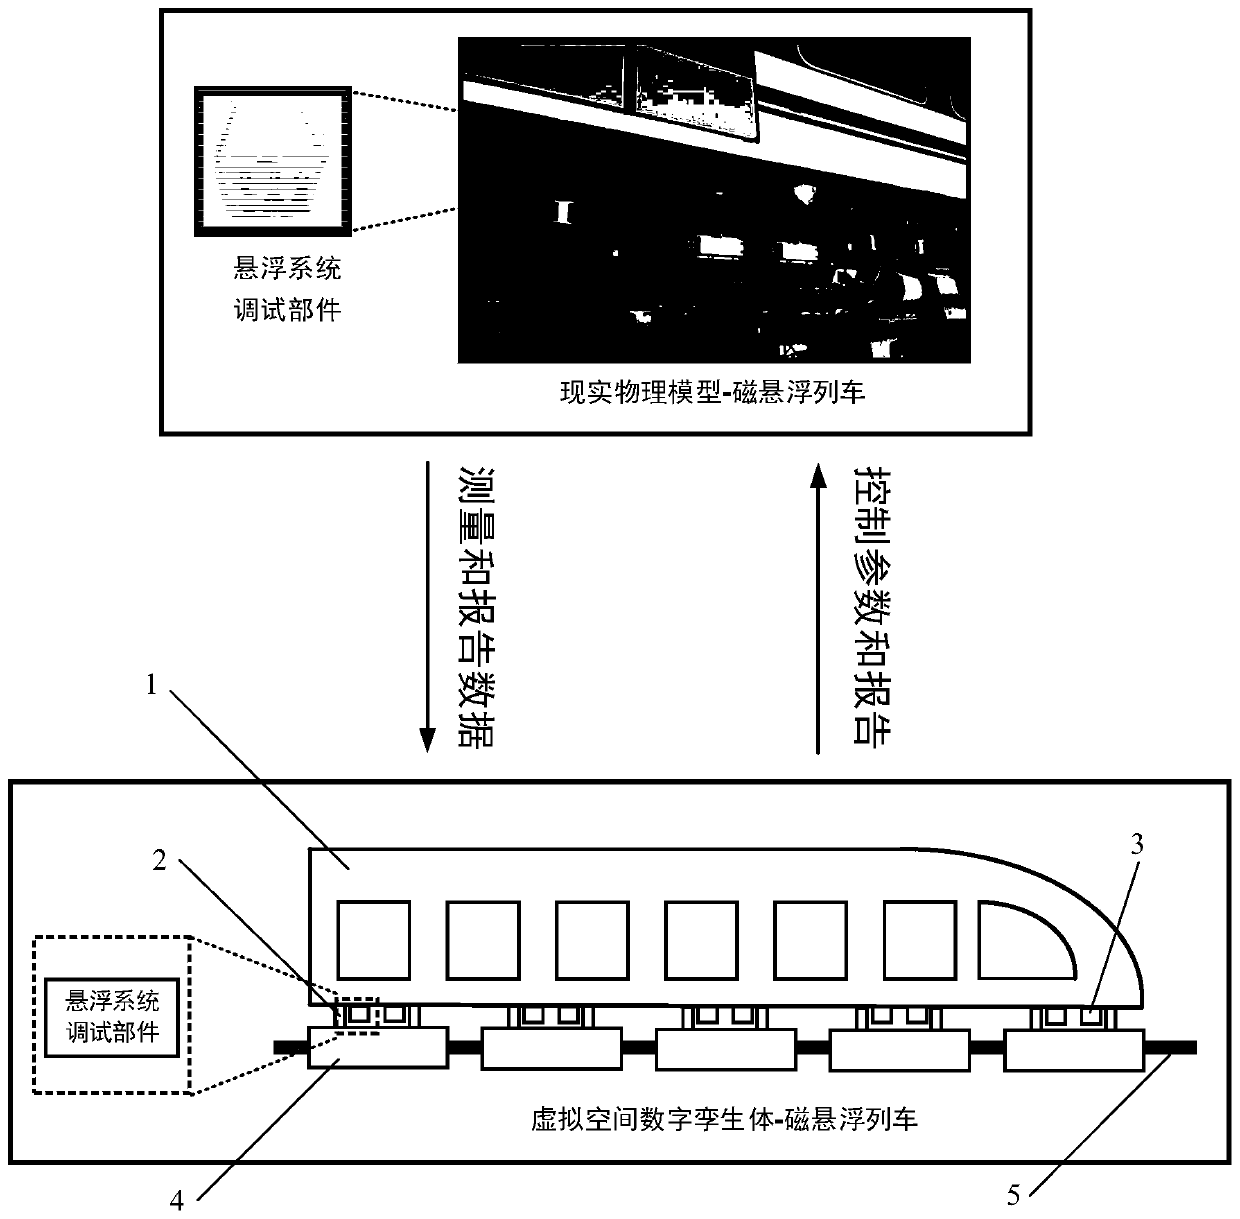 Maglev train levitation system debugging method based on digital twinning technology